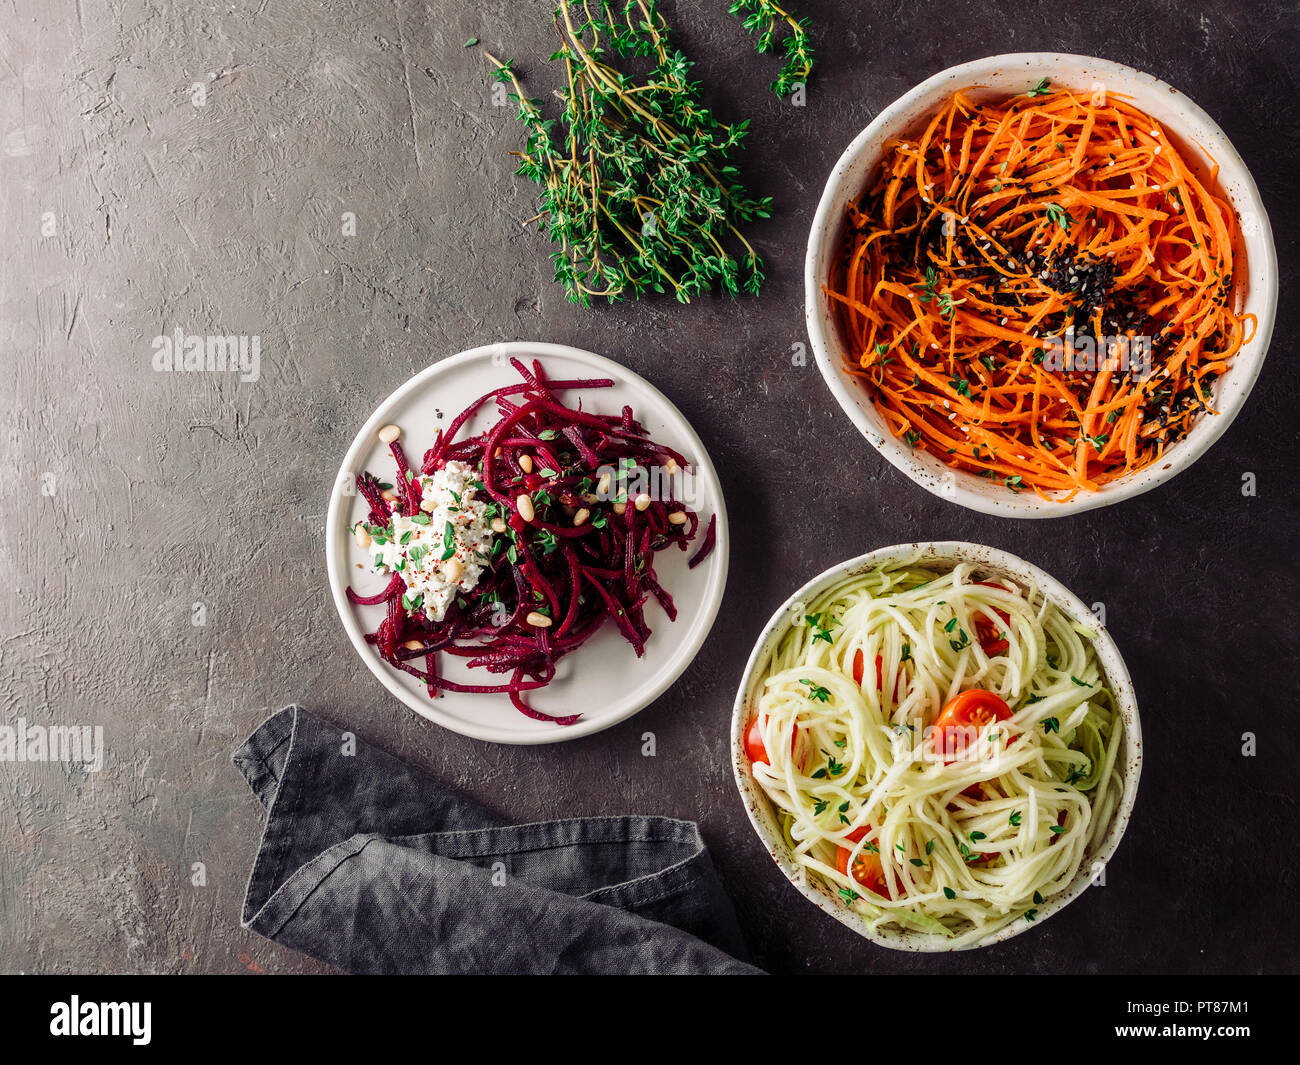 Ideas y Recetas para ensalada saludable - Sésamo picante ensalada de fideos  de zanahoria, remolacha cruda fideos wih ricotta,calabacín zoodles ensalada  con  Fotografía de stock - Alamy